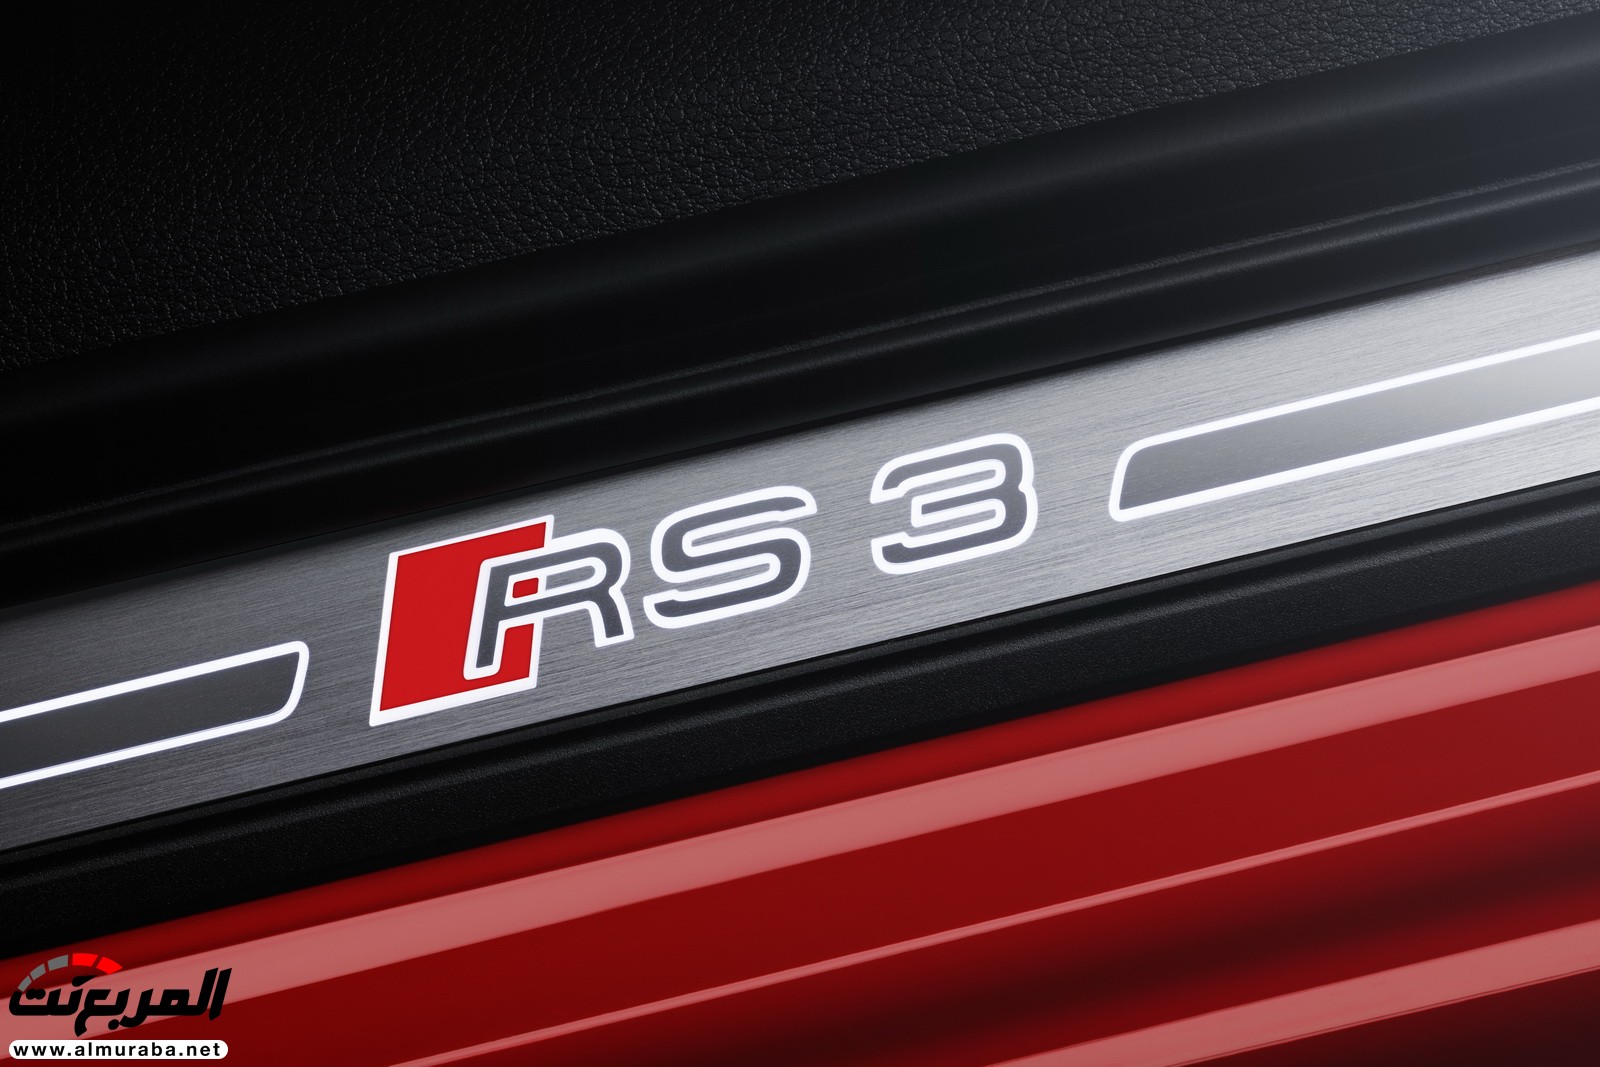 "أودي" تكشف عن RS3 الجديدة كليا 2018 بقوة 395 حصان Audi 43